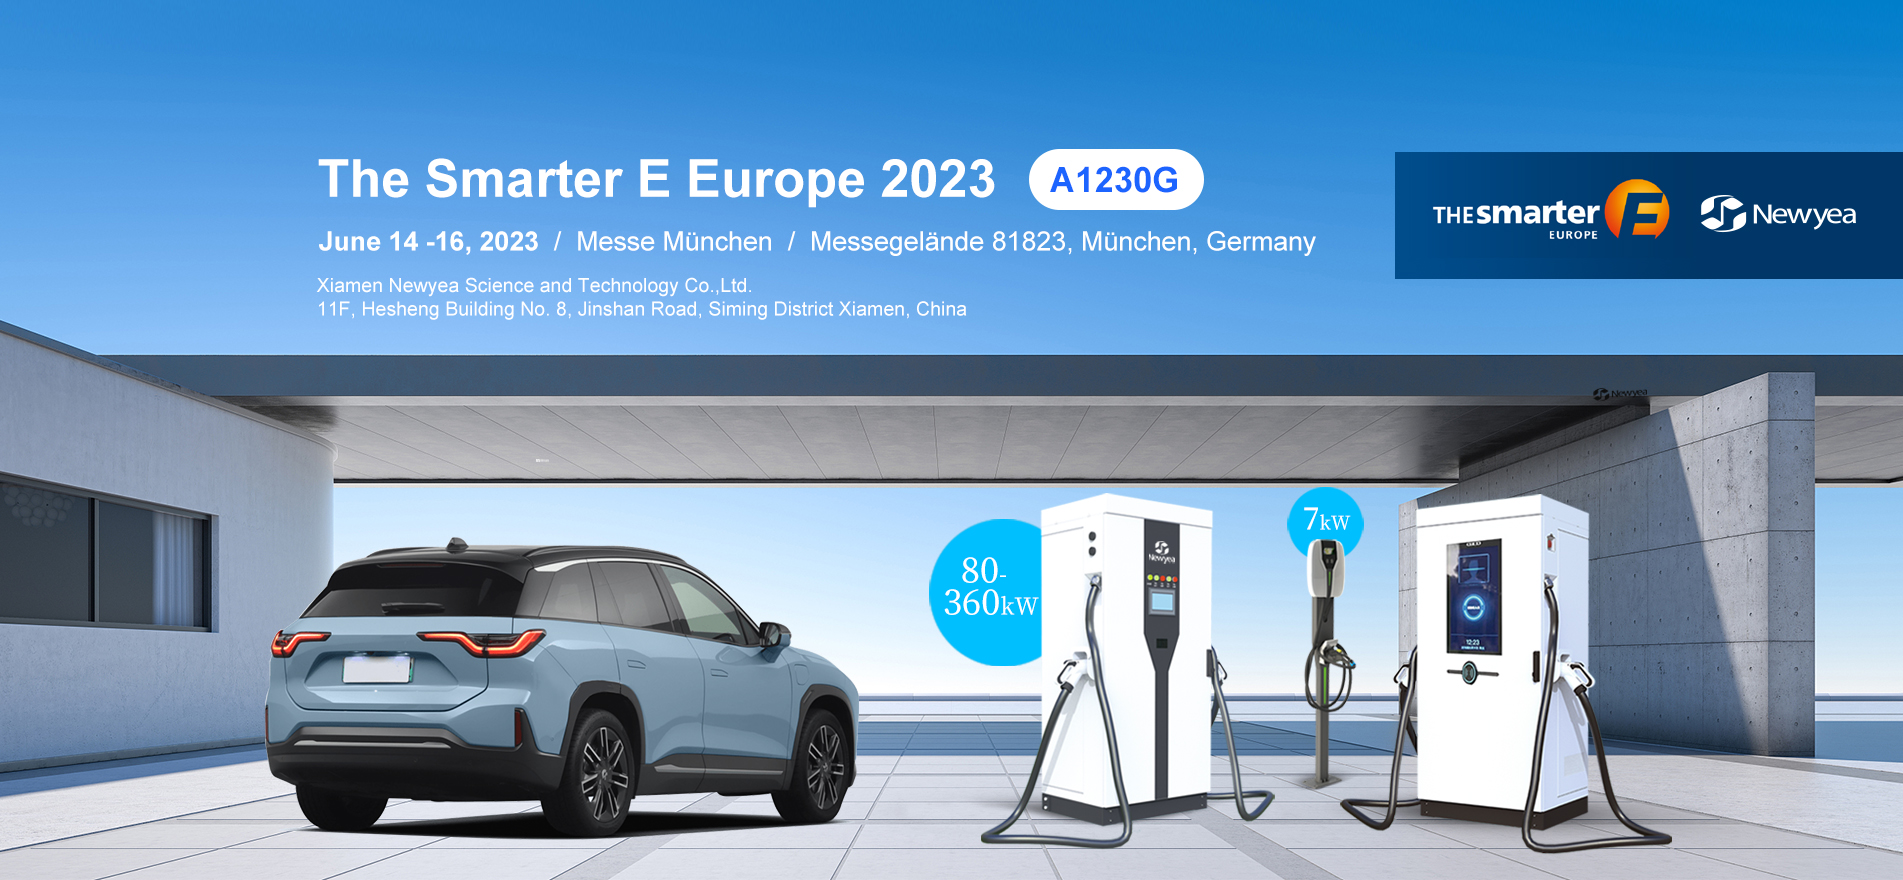 The Smarter E Europe 2023 